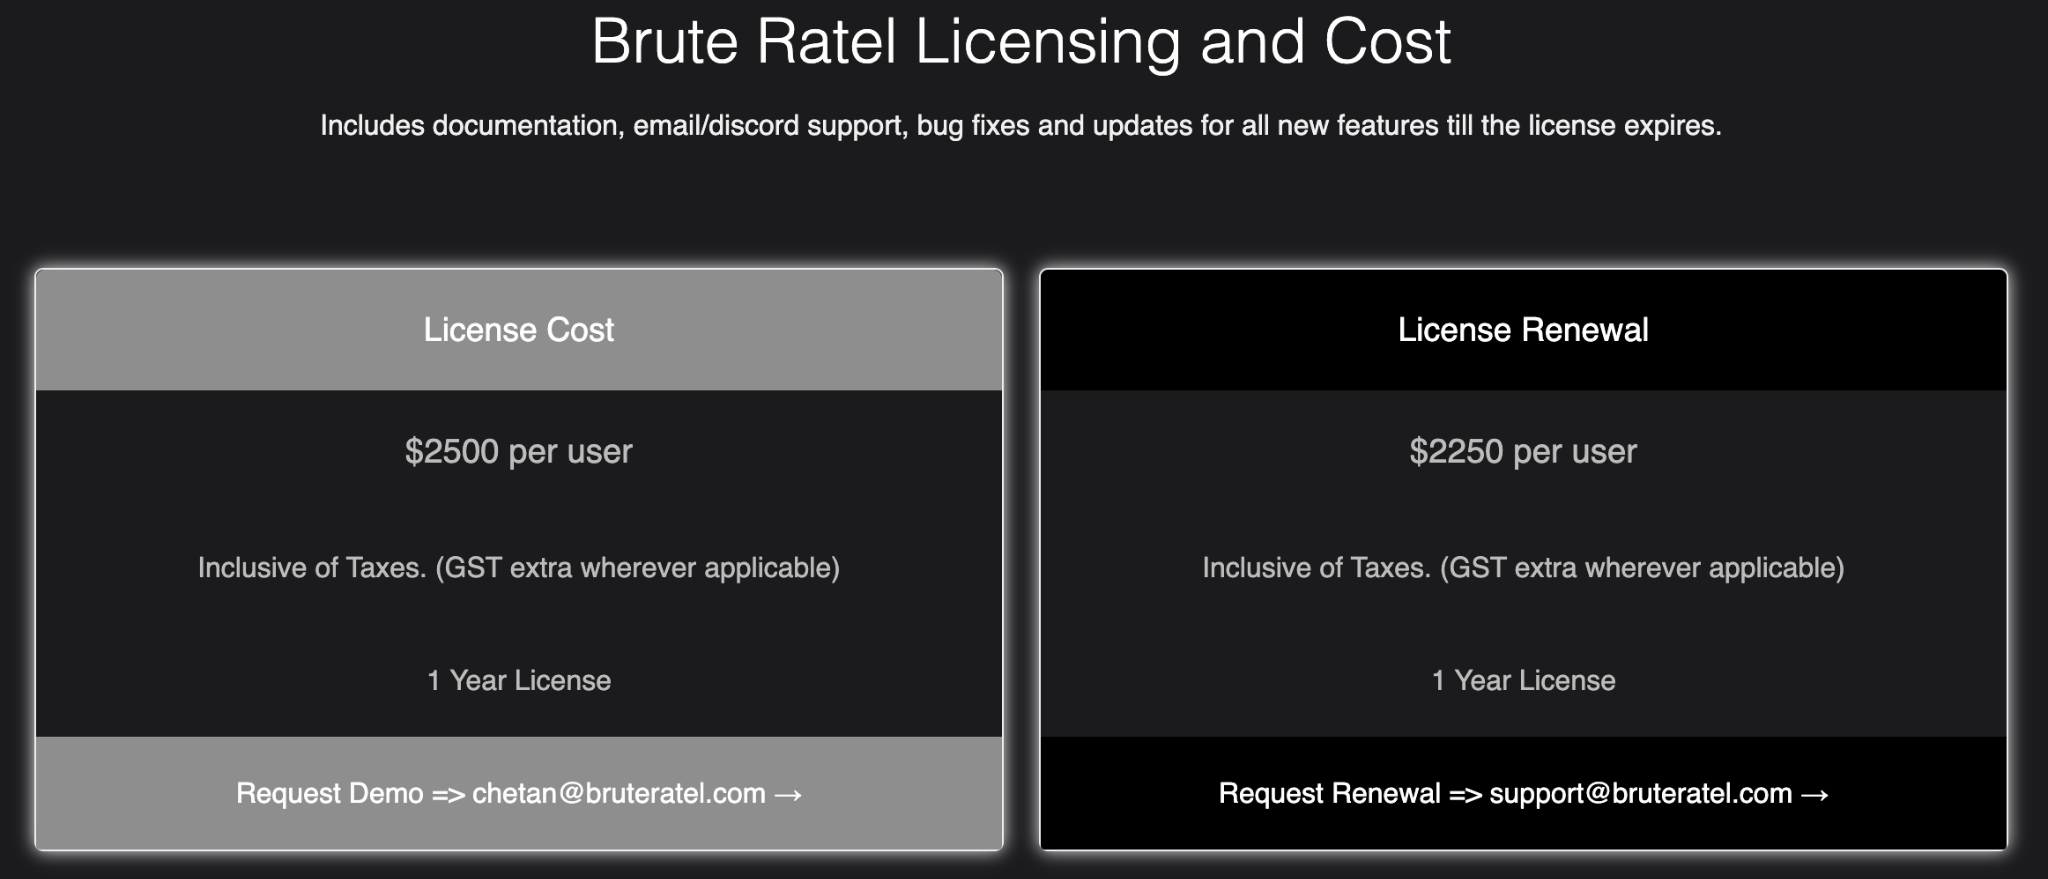 Brute Ratelのライセンスとコスト: ドキュメント、Eメール/Discordサポート、バグフィックス、ライセンスが切れるまでのすべての新機能のアップデートが含まれています。ライセンス費用: 1ユーザーあたり2500ドル。税込み(ただし必要に応じて物品サービス税追加) 1年間のライセンス。デモのご依頼は[メールアドレス]まで。ライセンス更新: 1ユーザーあたり2,250ドル(税込)。 